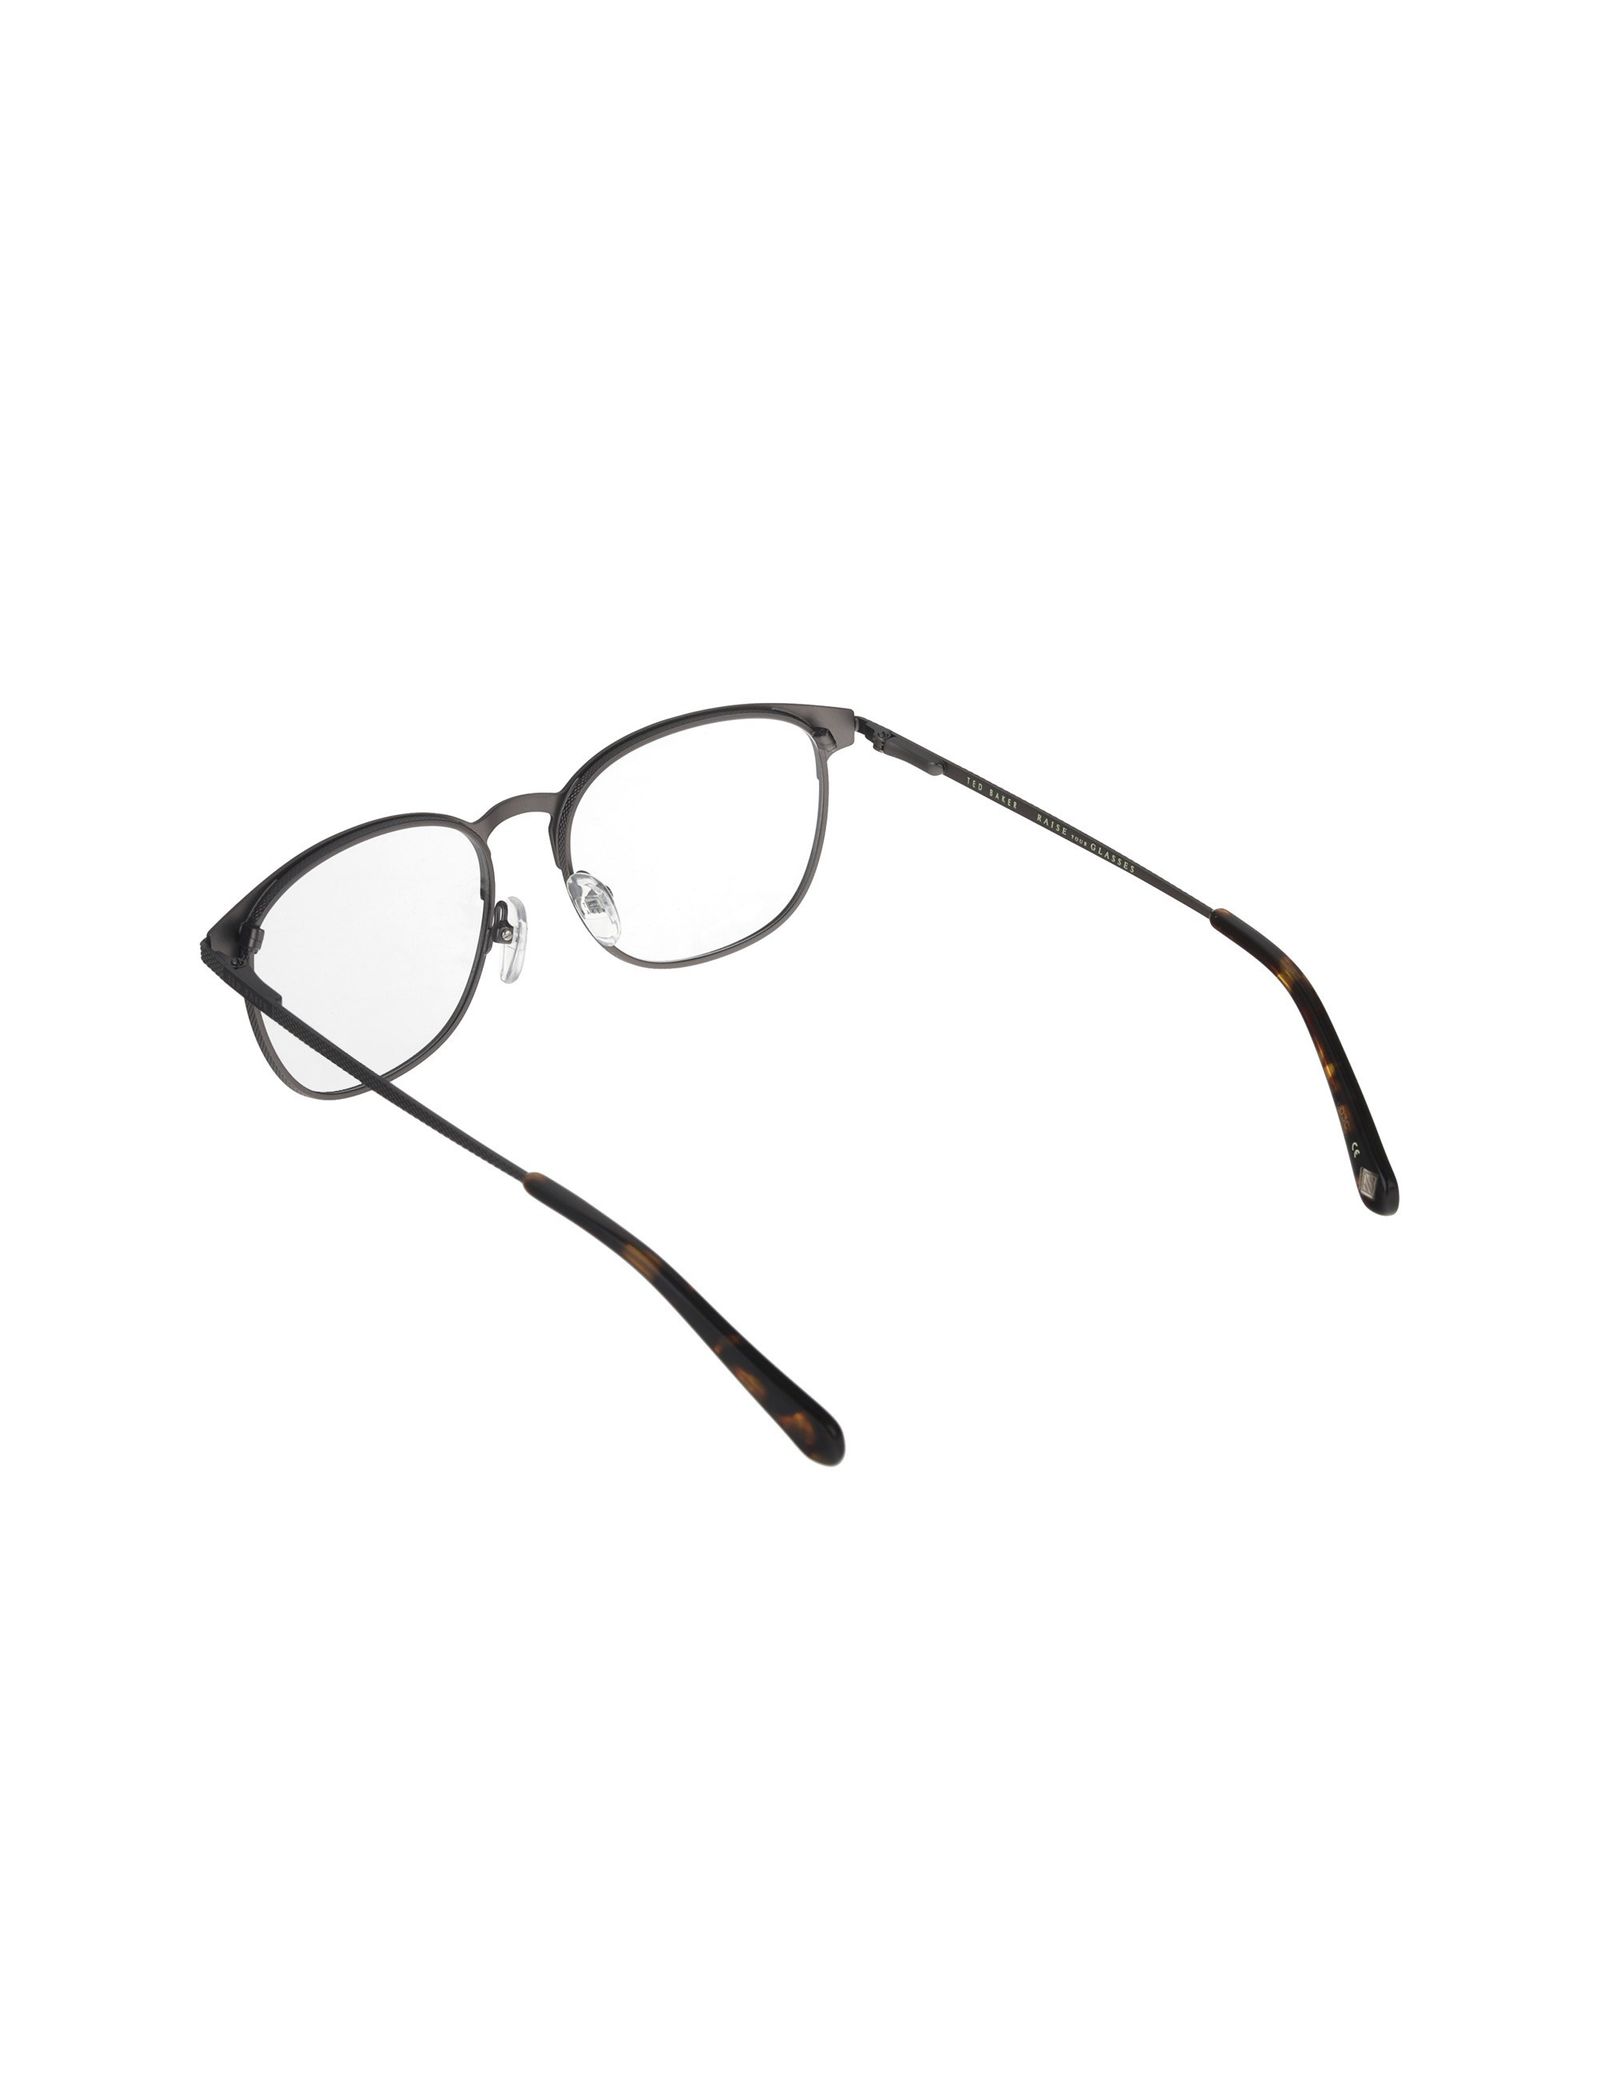 عینک طبی پنتوس زنانه - تد بیکر - مشکي و طوسي - 5